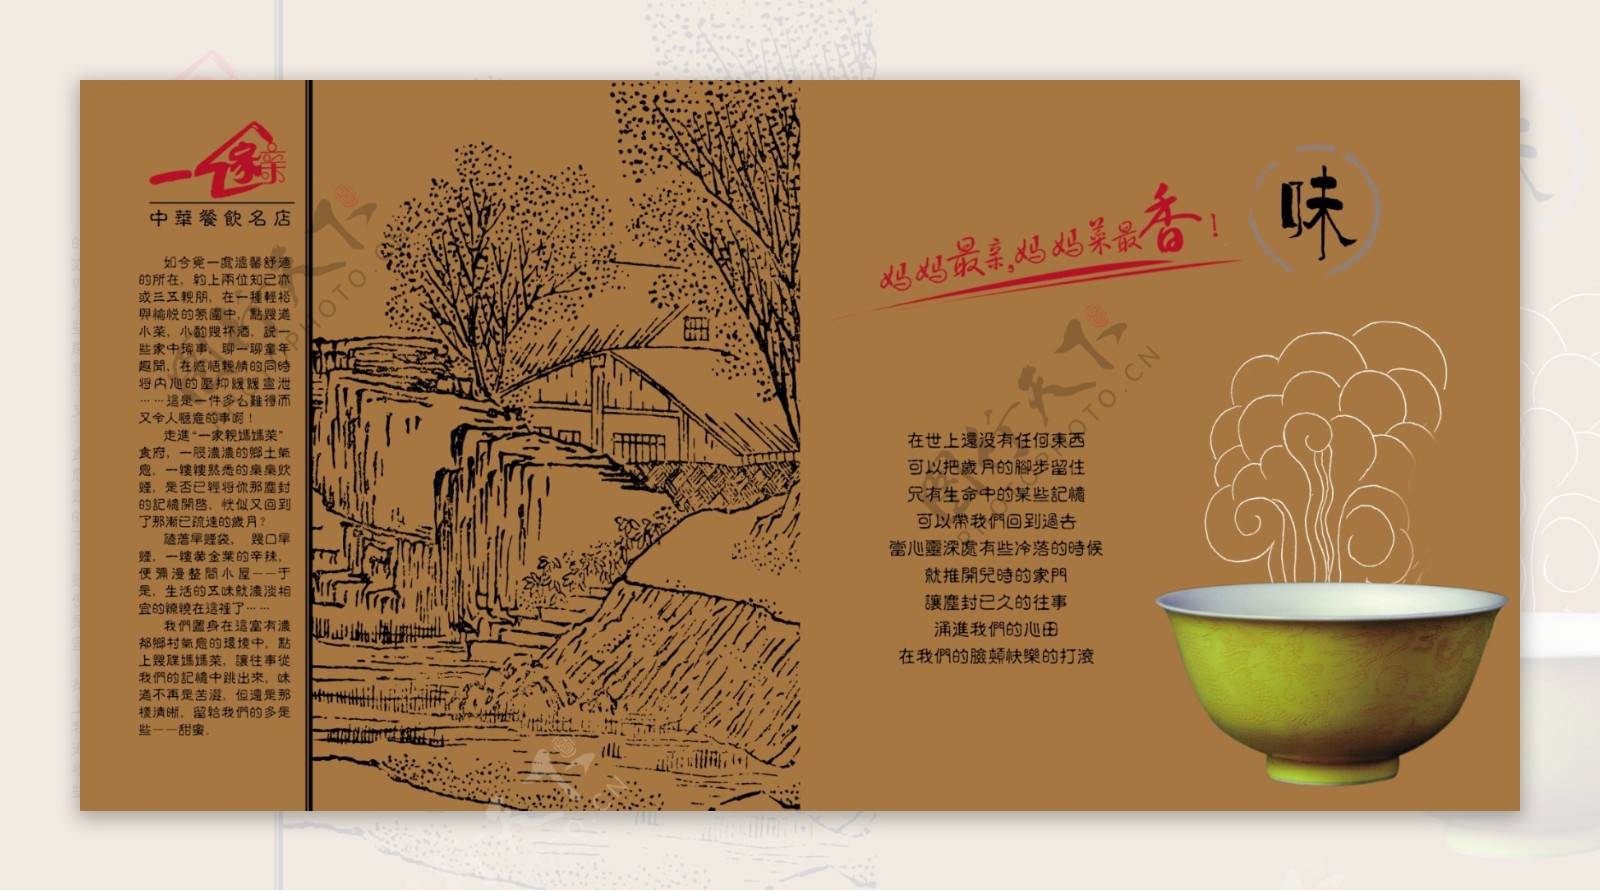 中国风味餐饮名店设计图片